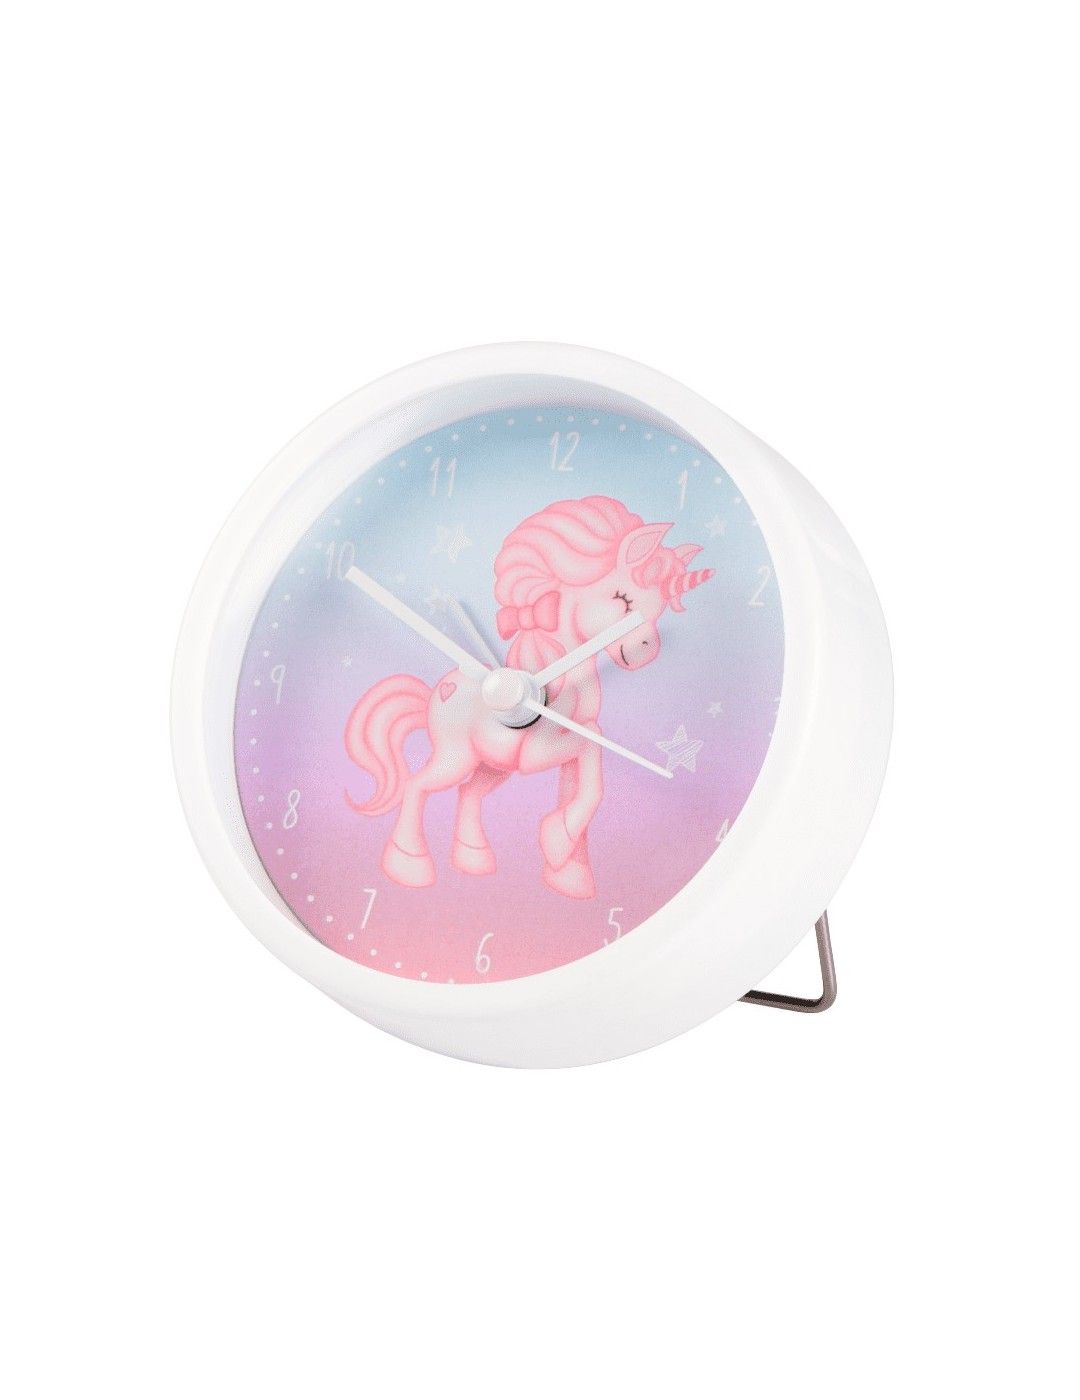 Magical Unicorn Hama children's alarm clock